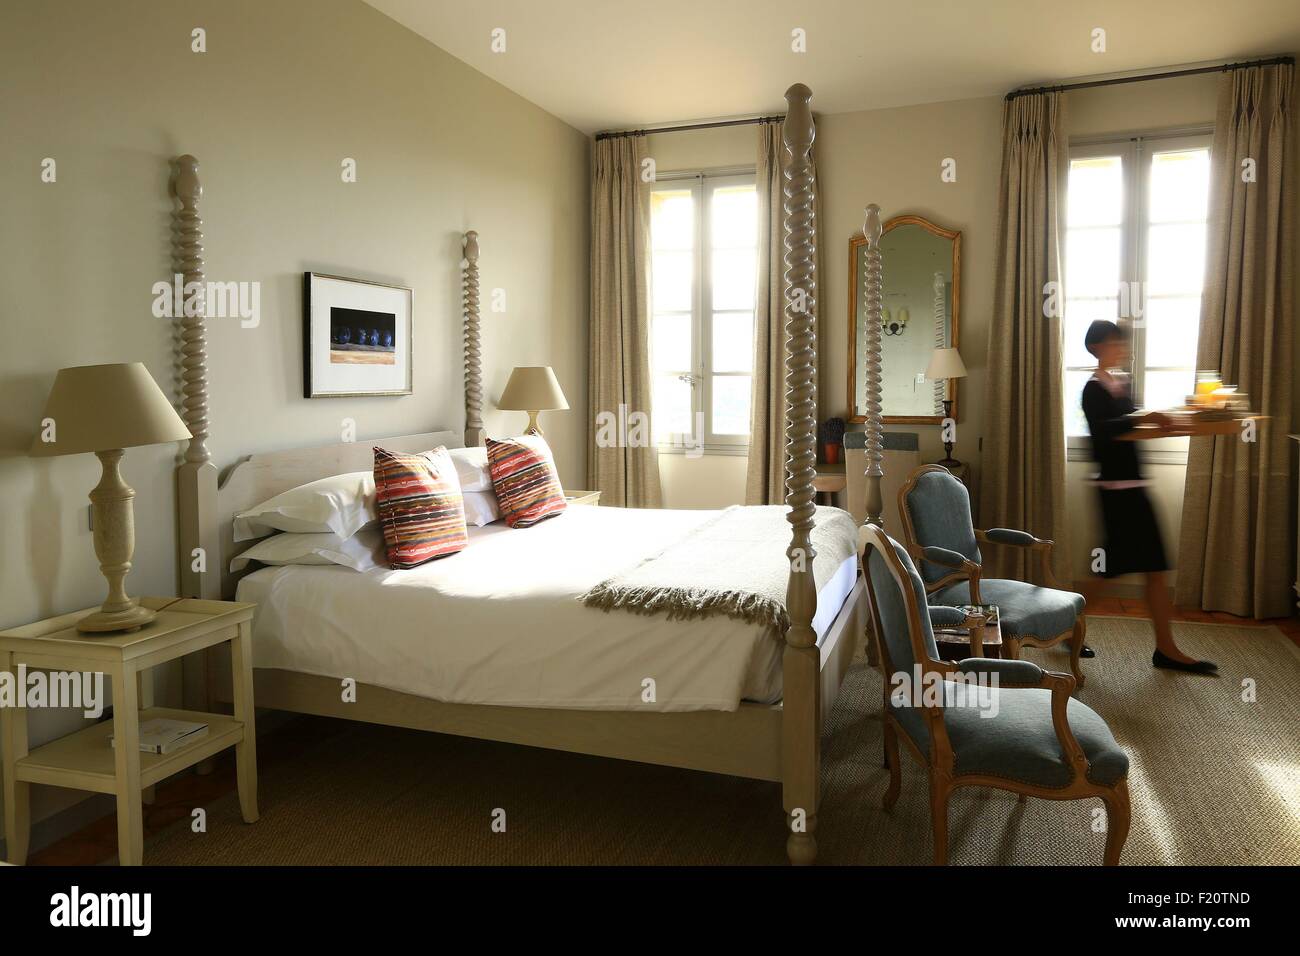 France, Vaucluse, Crillon le Brave Hotel Crillon Le Brave, bedroom Stock Photo